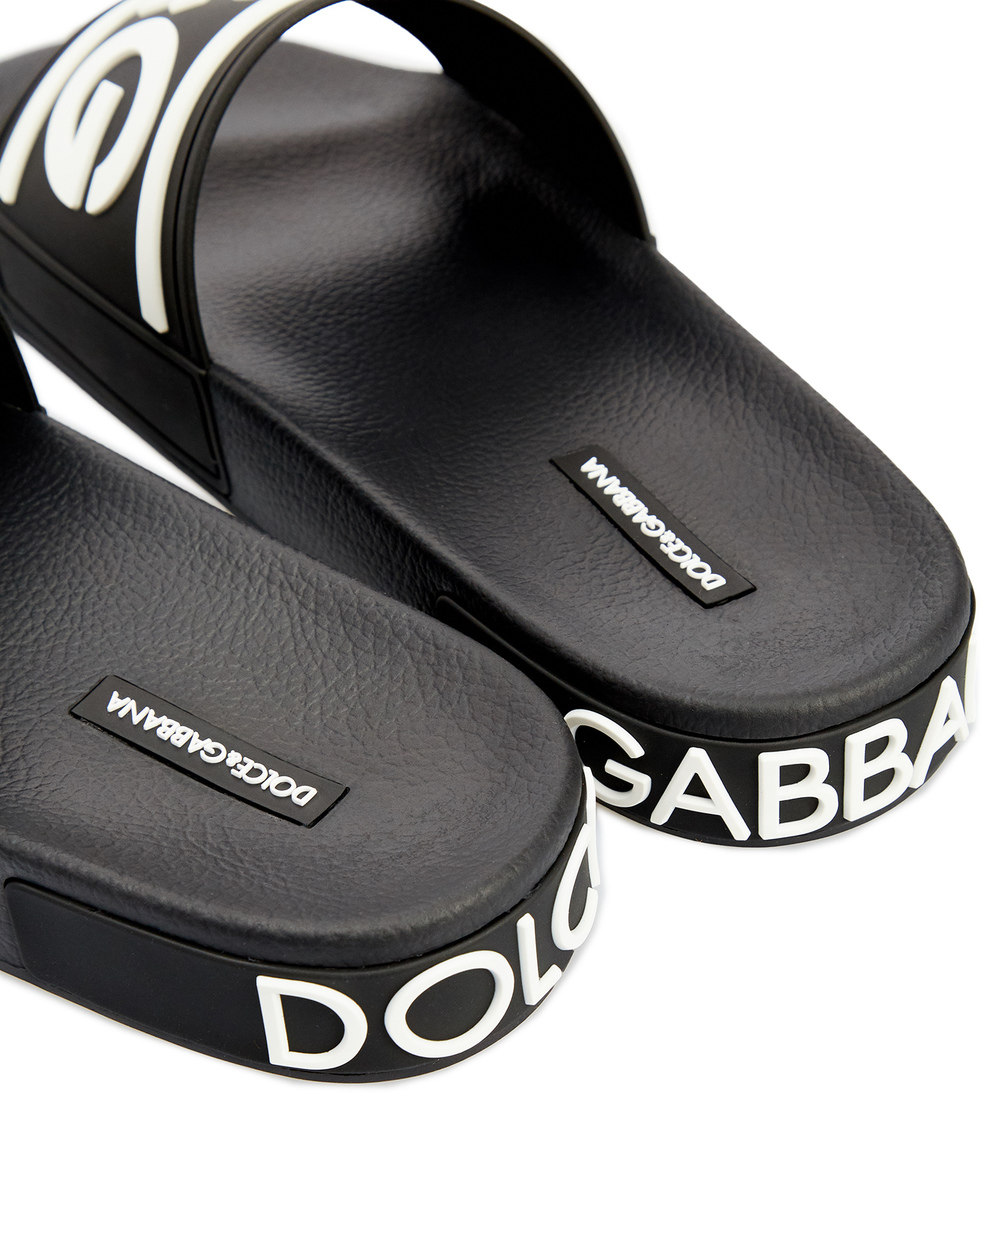 Слайдеры Dolce&Gabbana CS1991-AQ858, черный цвет • Купить в интернет-магазине Kameron